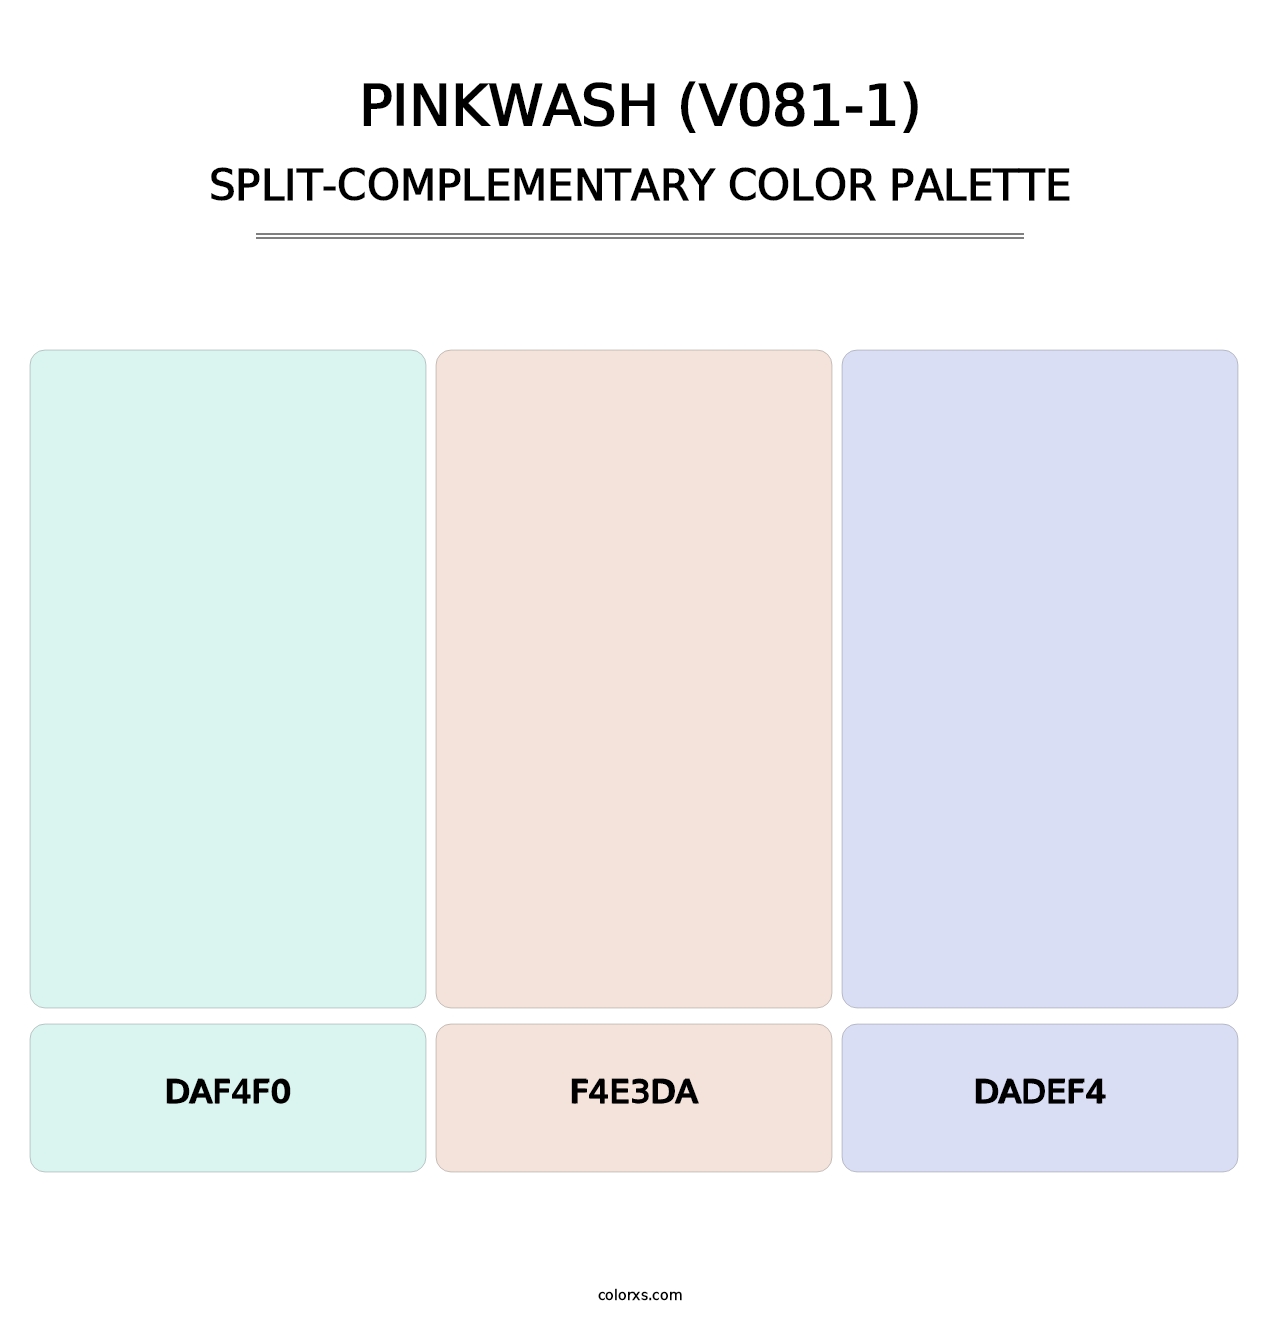 Pinkwash (V081-1) - Split-Complementary Color Palette